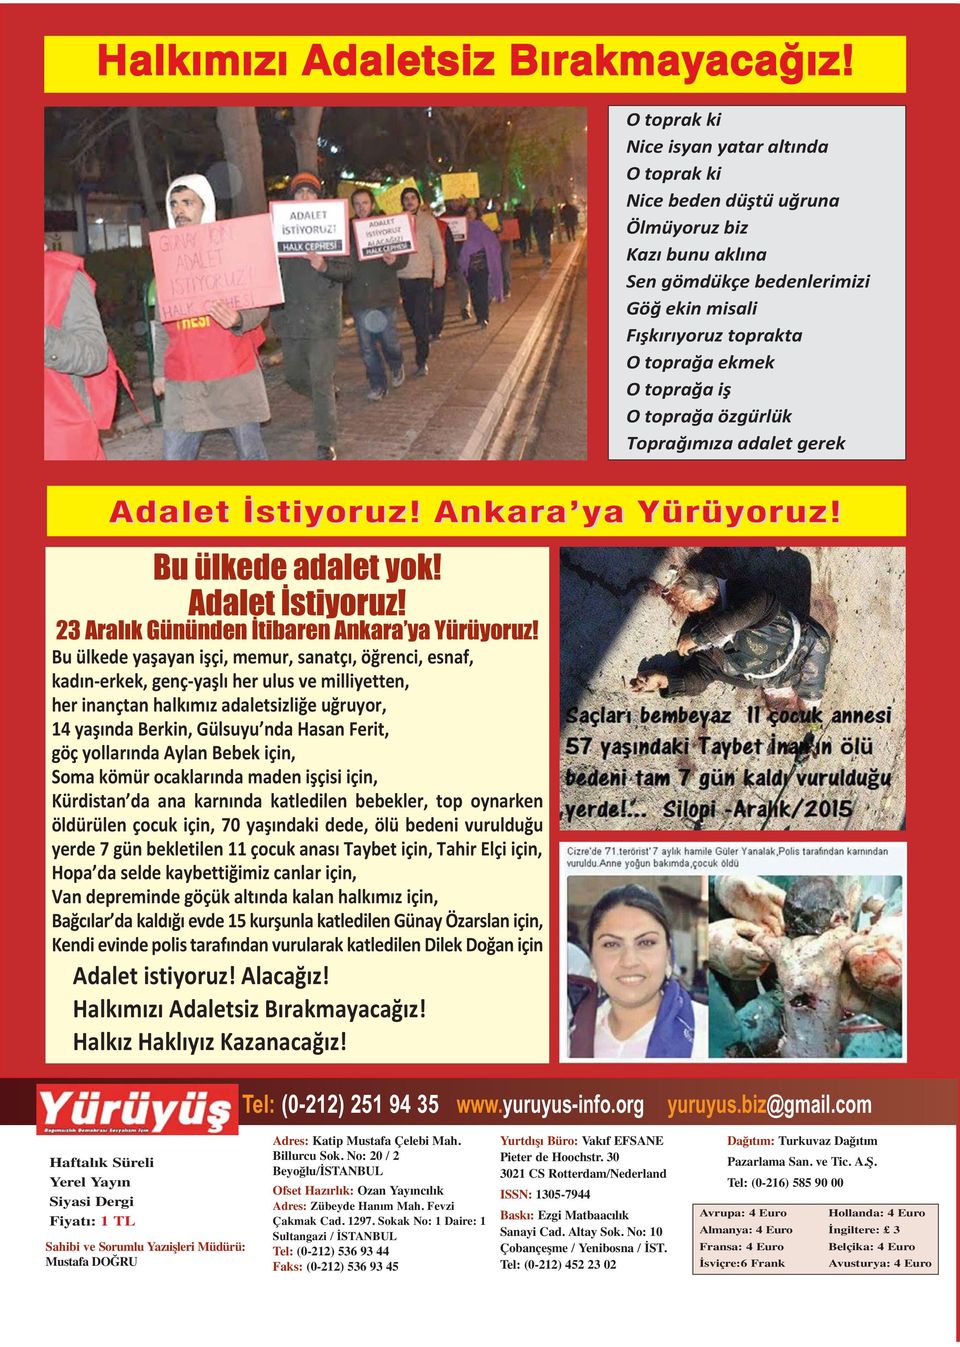 O toprağa özgu rlu k Toprağımıza adalet gerek Adalet İstiyoruz! Ankara ya Yürüyoruz! Bu ülkede adalet yok! Adalet İstiyoruz! 23 Aralık Gününden İtibaren Ankara ya Yürüyoruz!